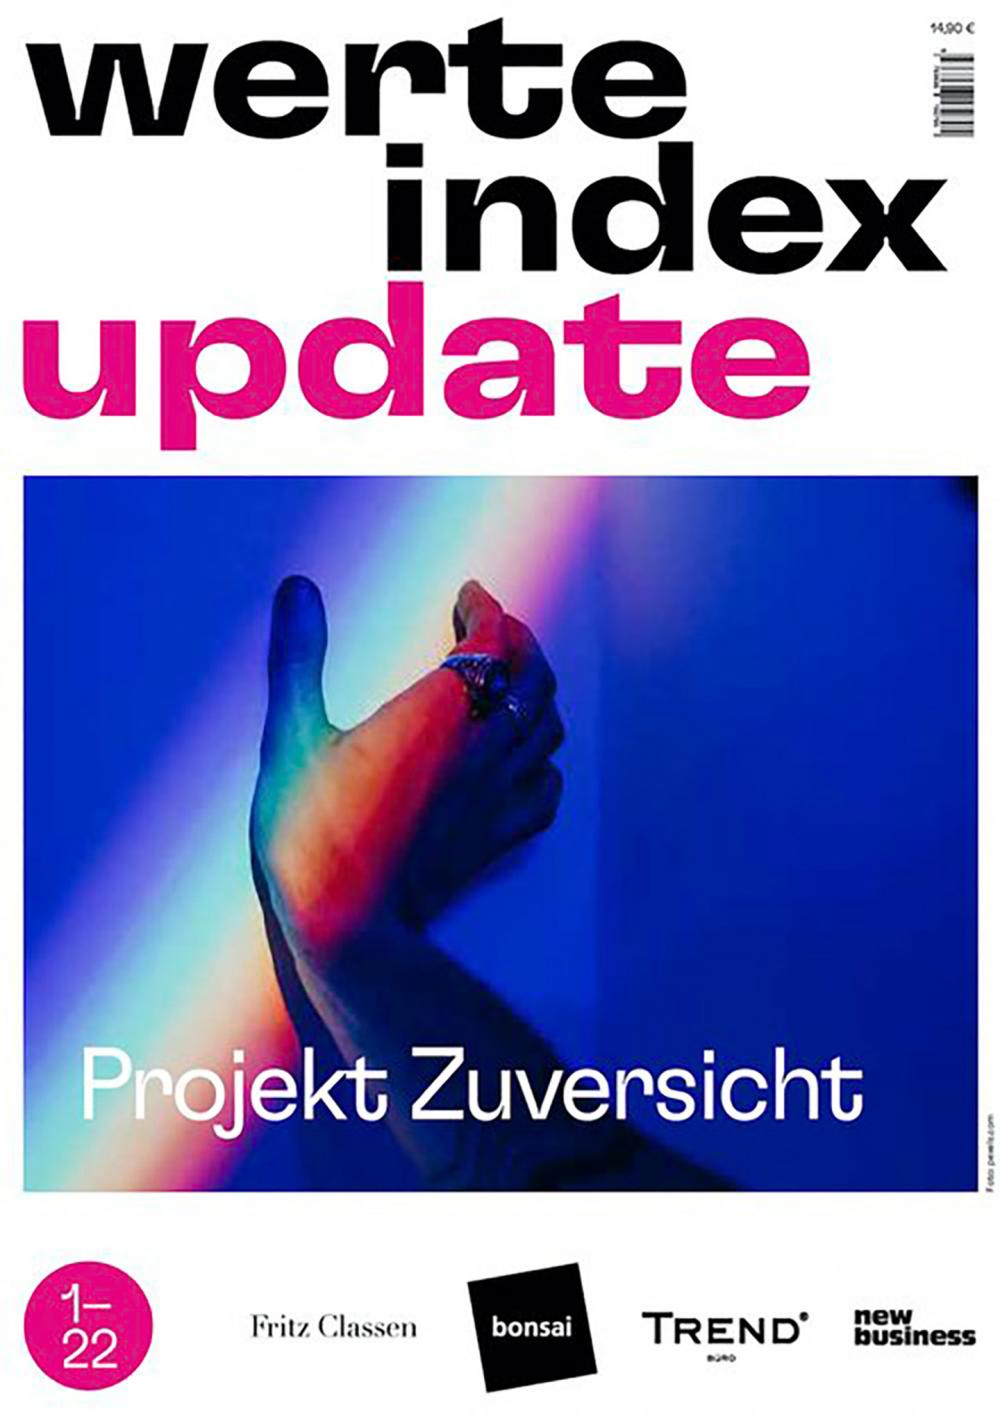 Value Index Update 2022